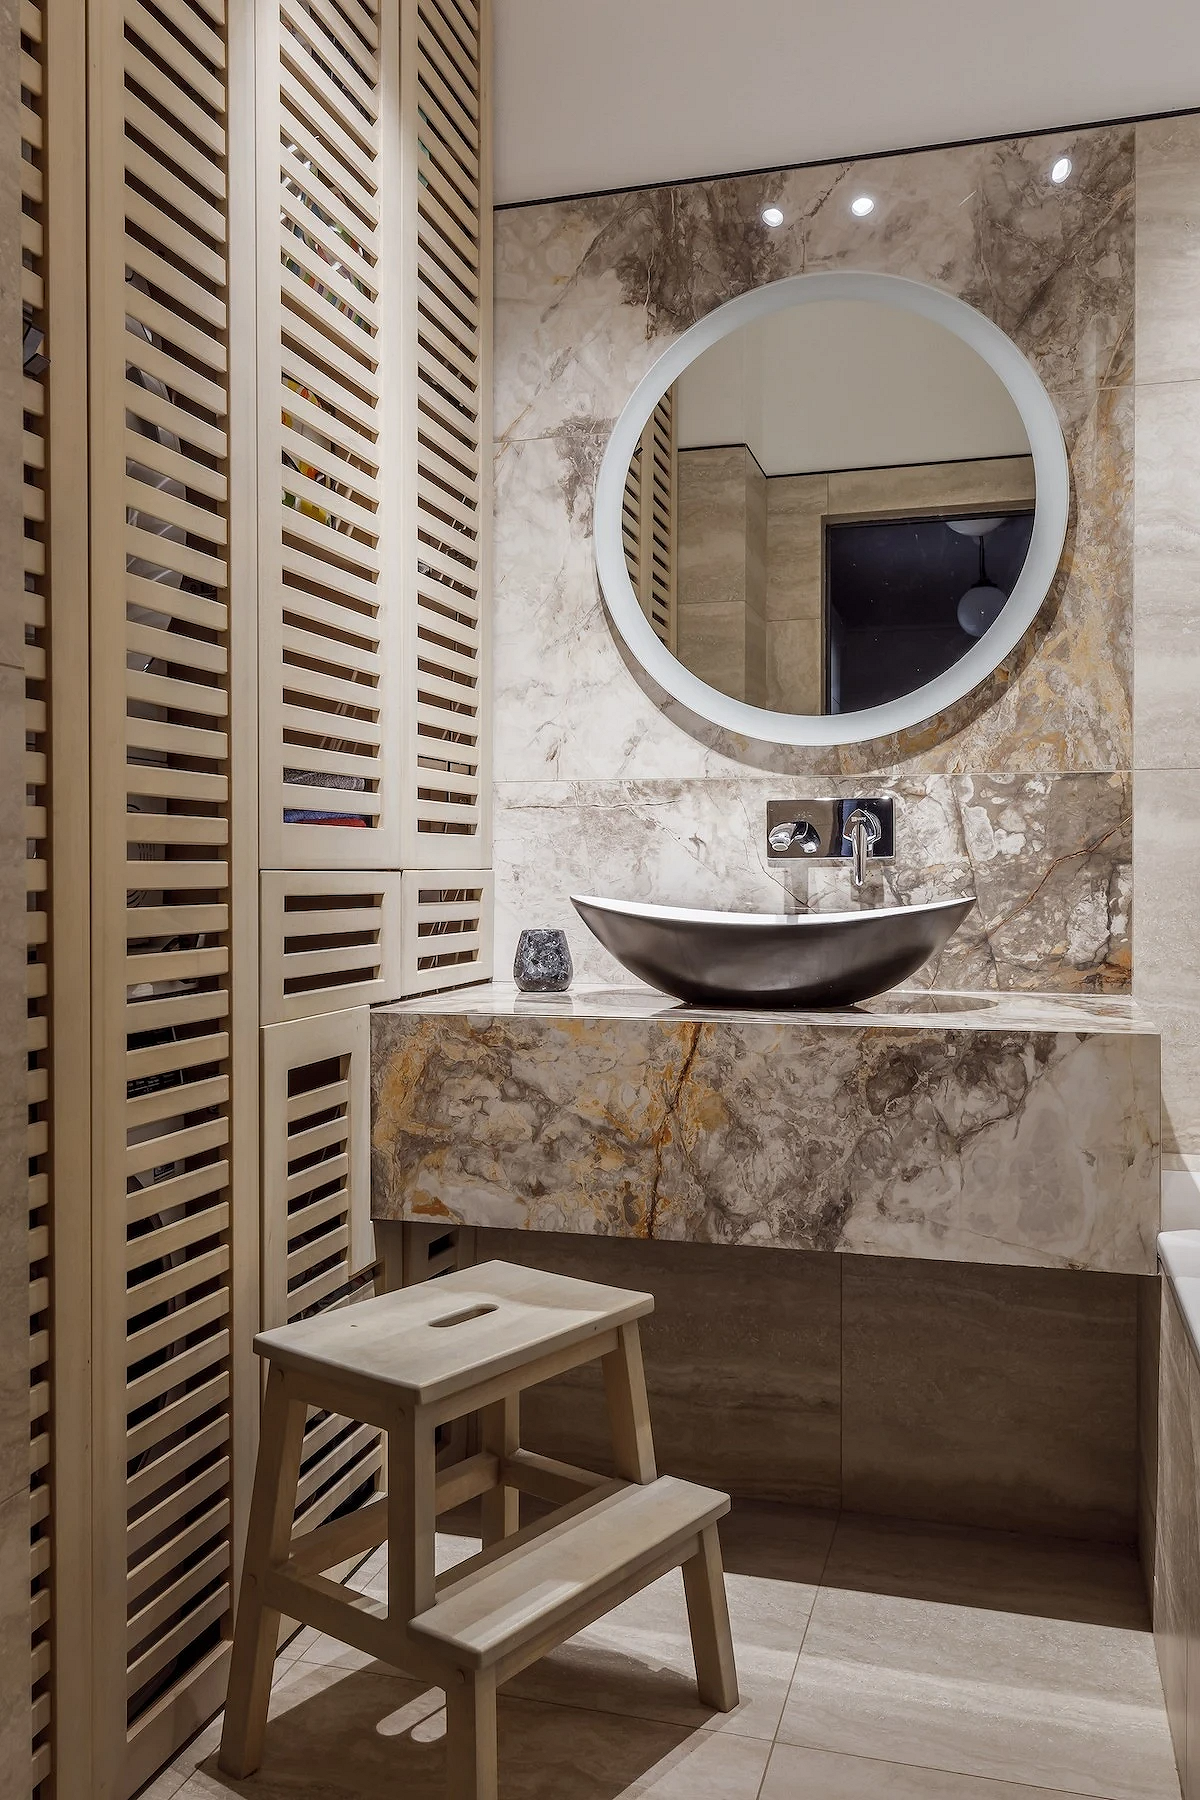 9 необычных решений для ванной комнаты из проектов дизайнеров6